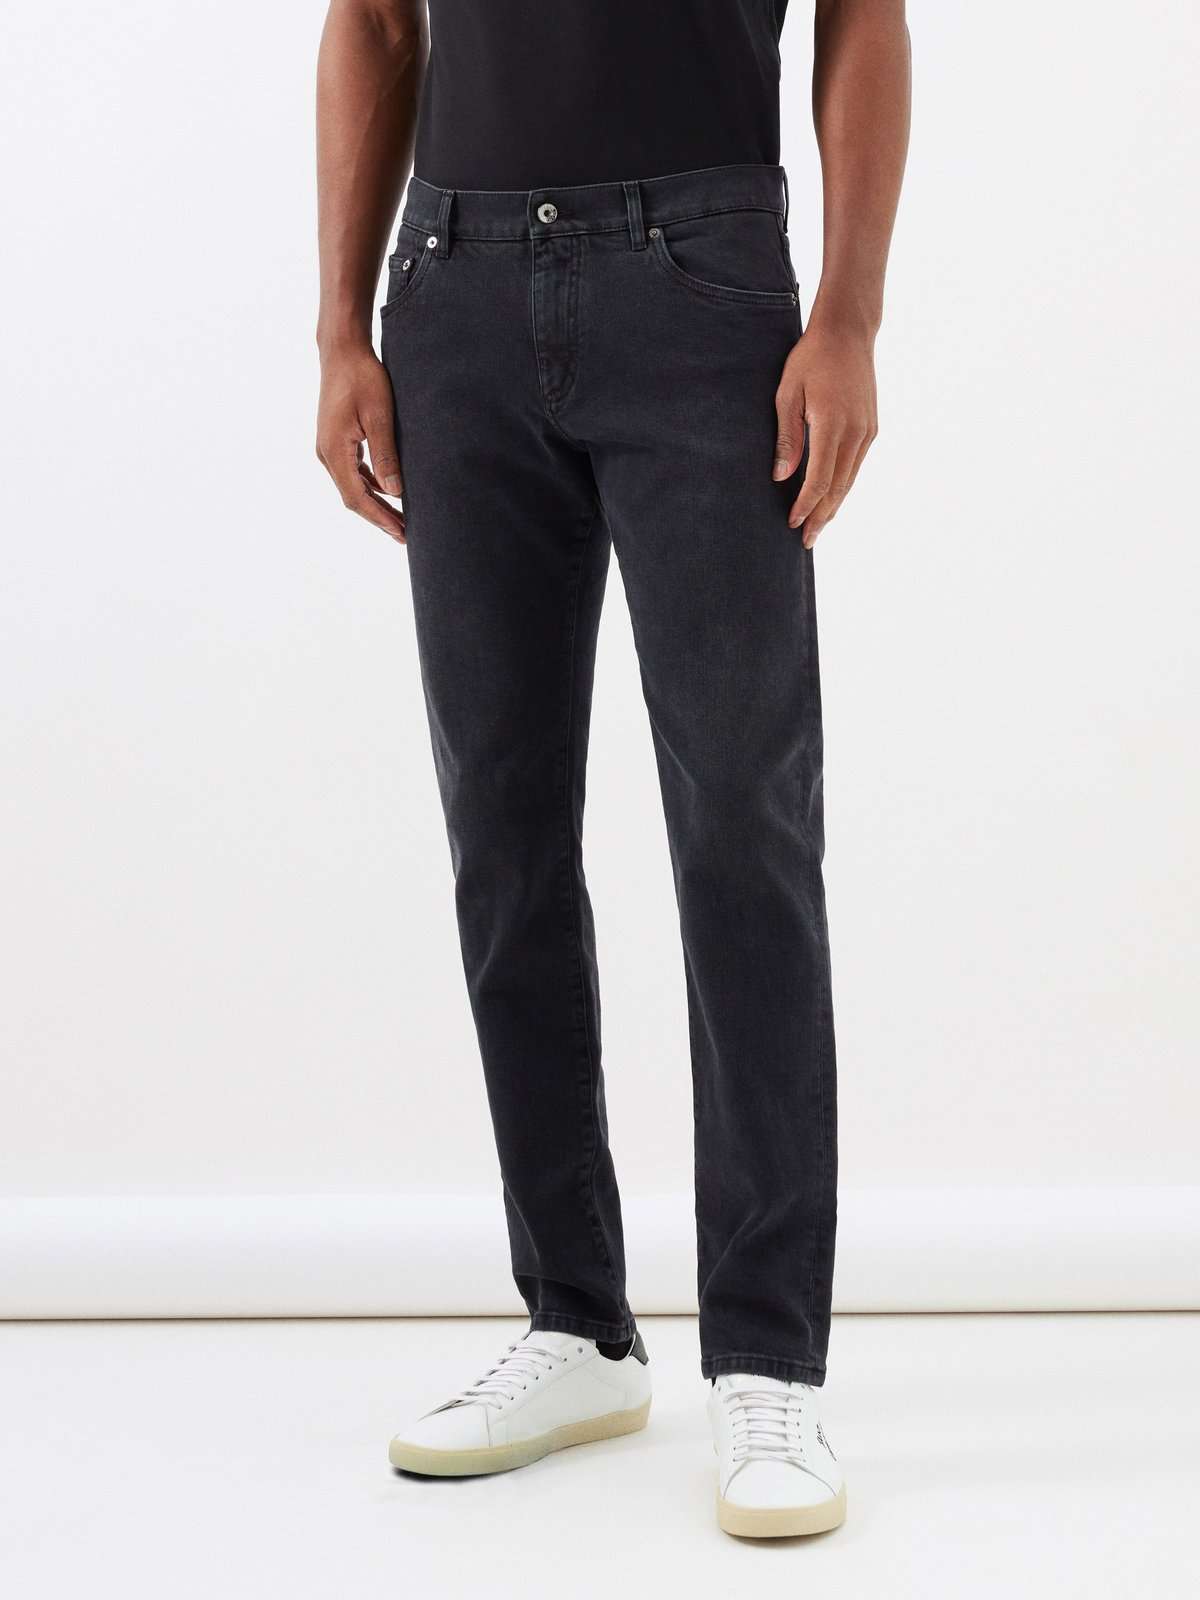 джинсы узкого кроя с бляшкой-логотипом